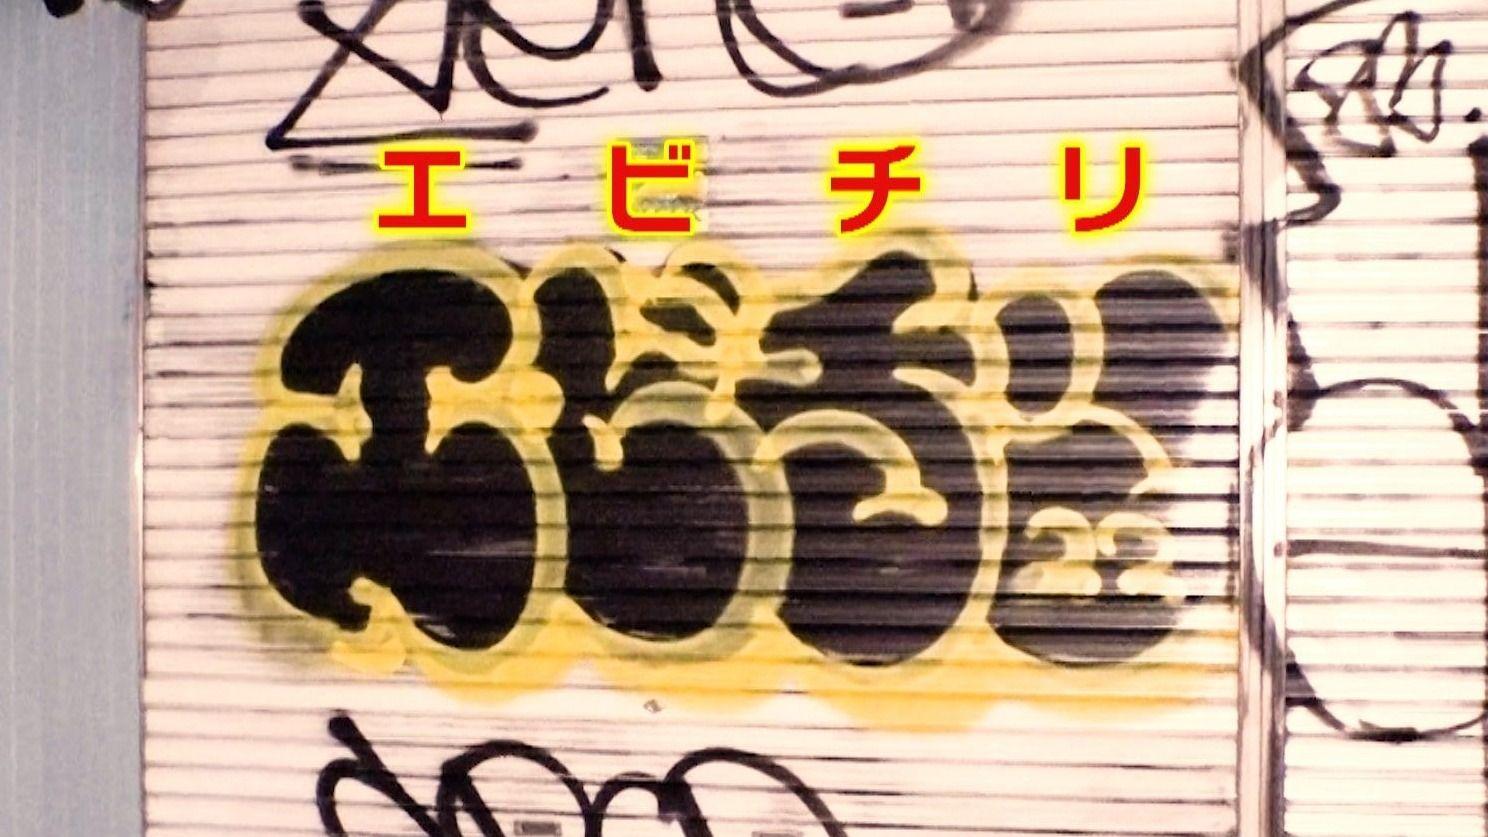 謎の「エビチリ」渋谷・下北沢で迷惑落書き急増　犯行の瞬間を直撃すると「書きたい場所に書いているだけ アートなんで」